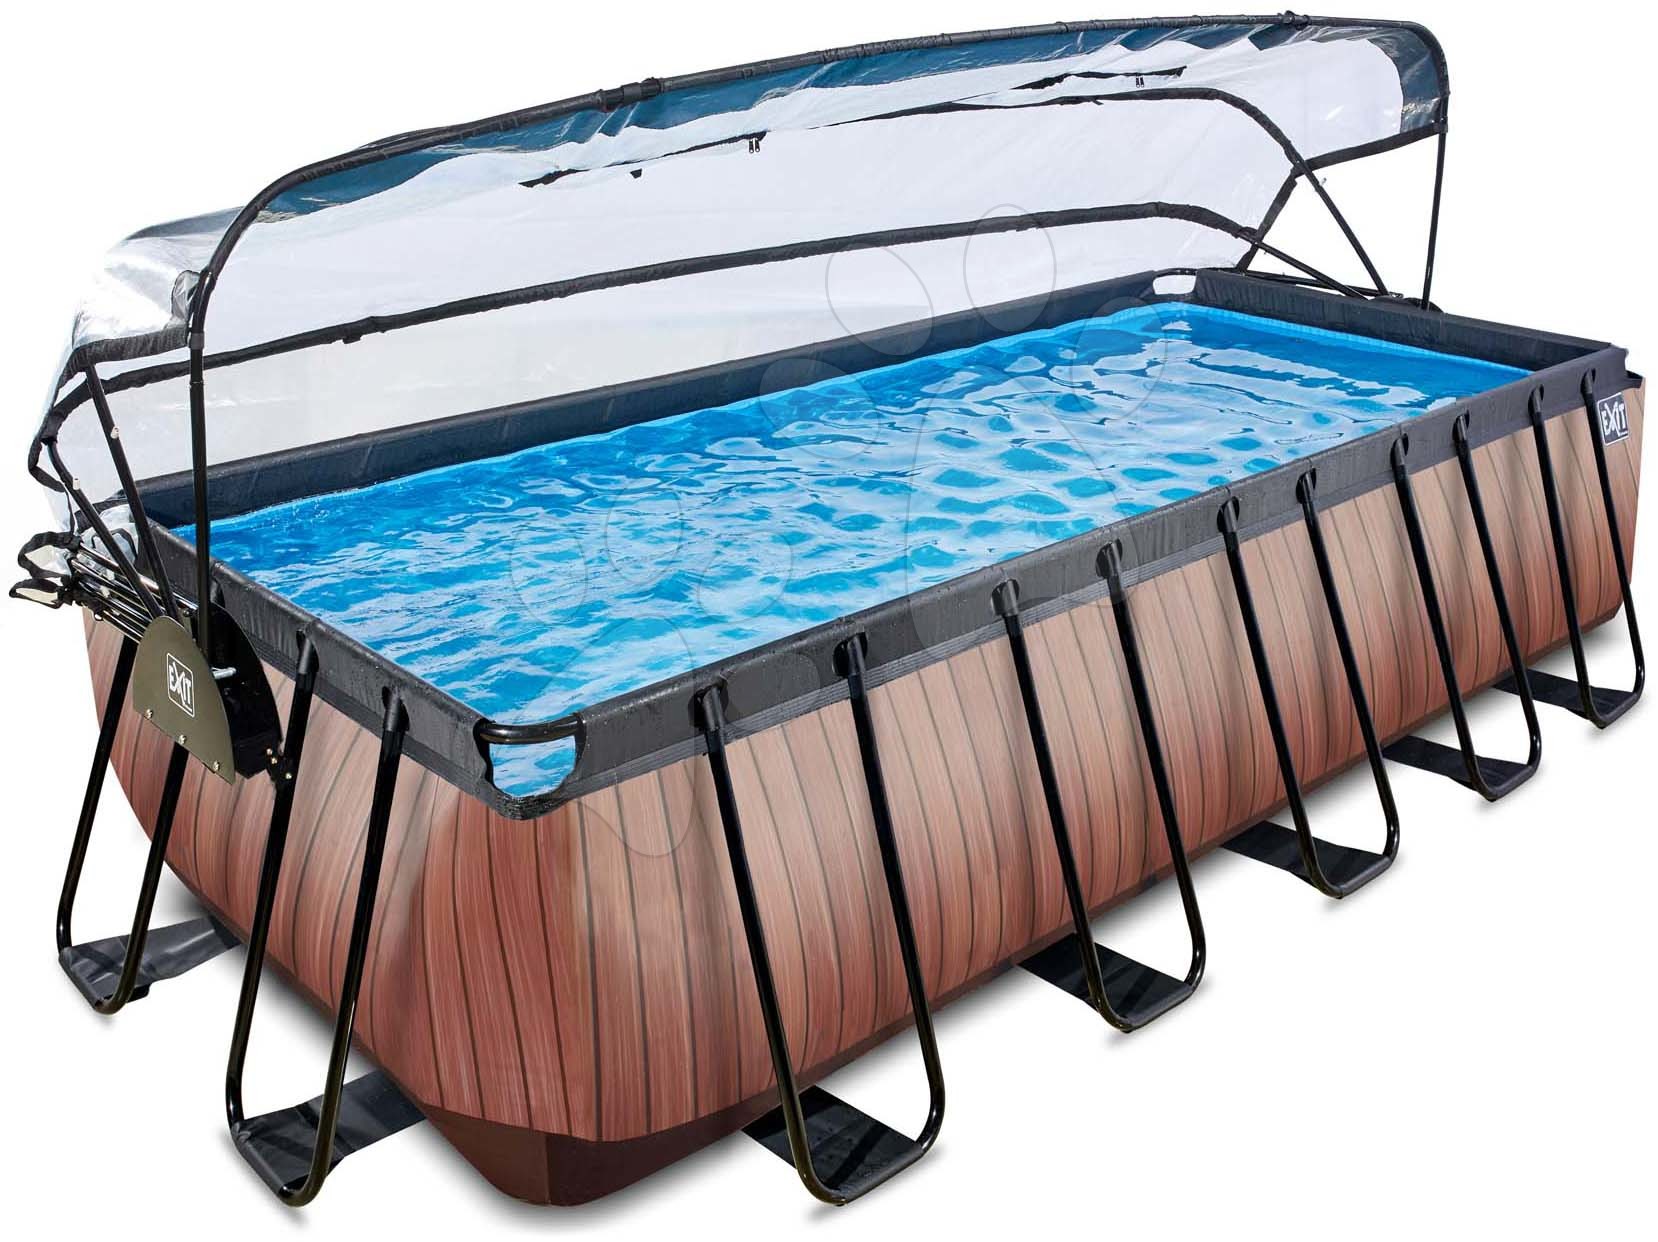 Obdélníkové bazény  - Bazén s krytem a pískovou filtrací Wood pool Exit Toys ocelová konstrukce 540*250*122 cm hnědý od 6 let